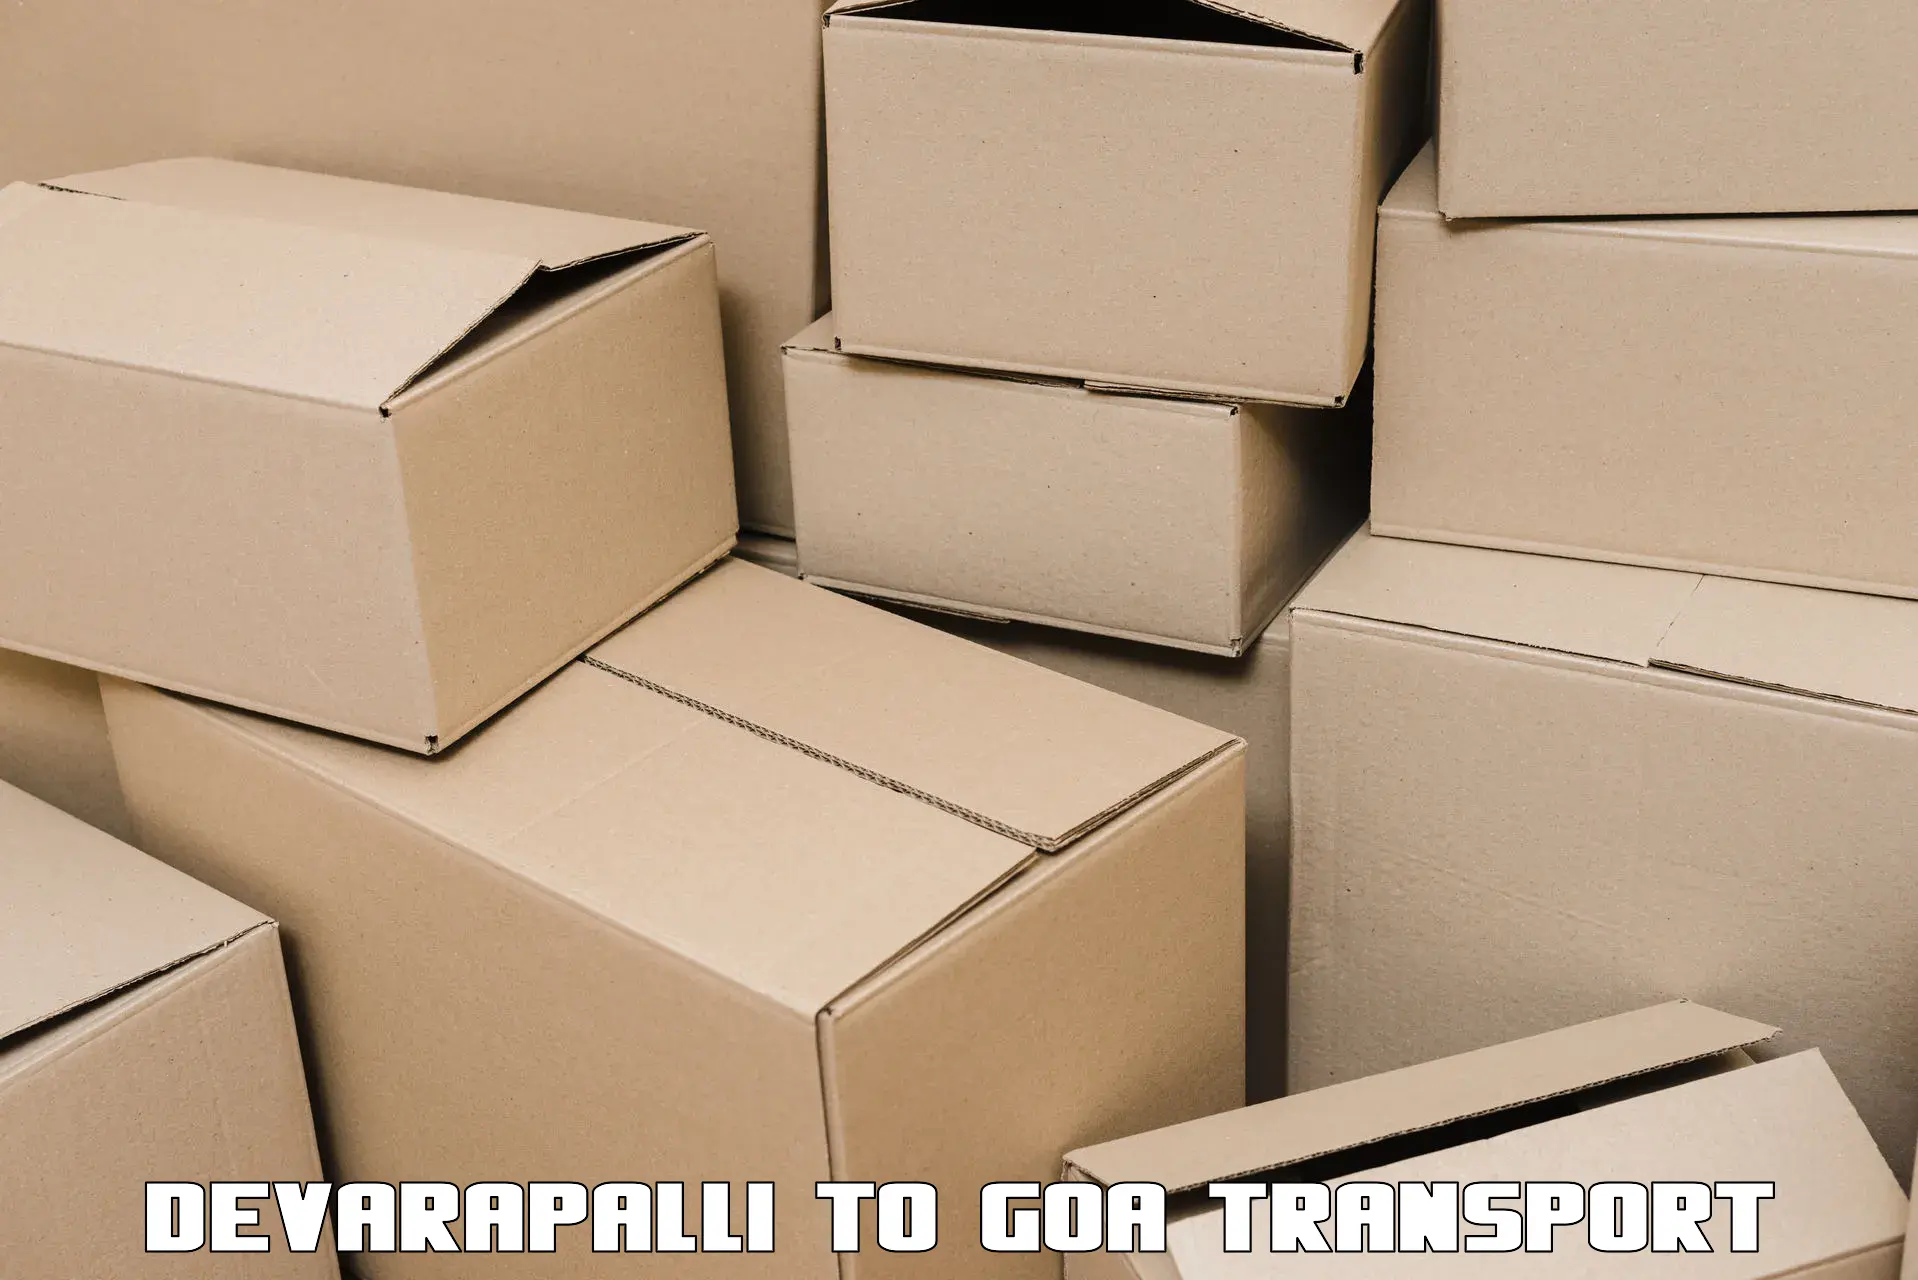 Furniture transport service Devarapalli to Mormugao Port